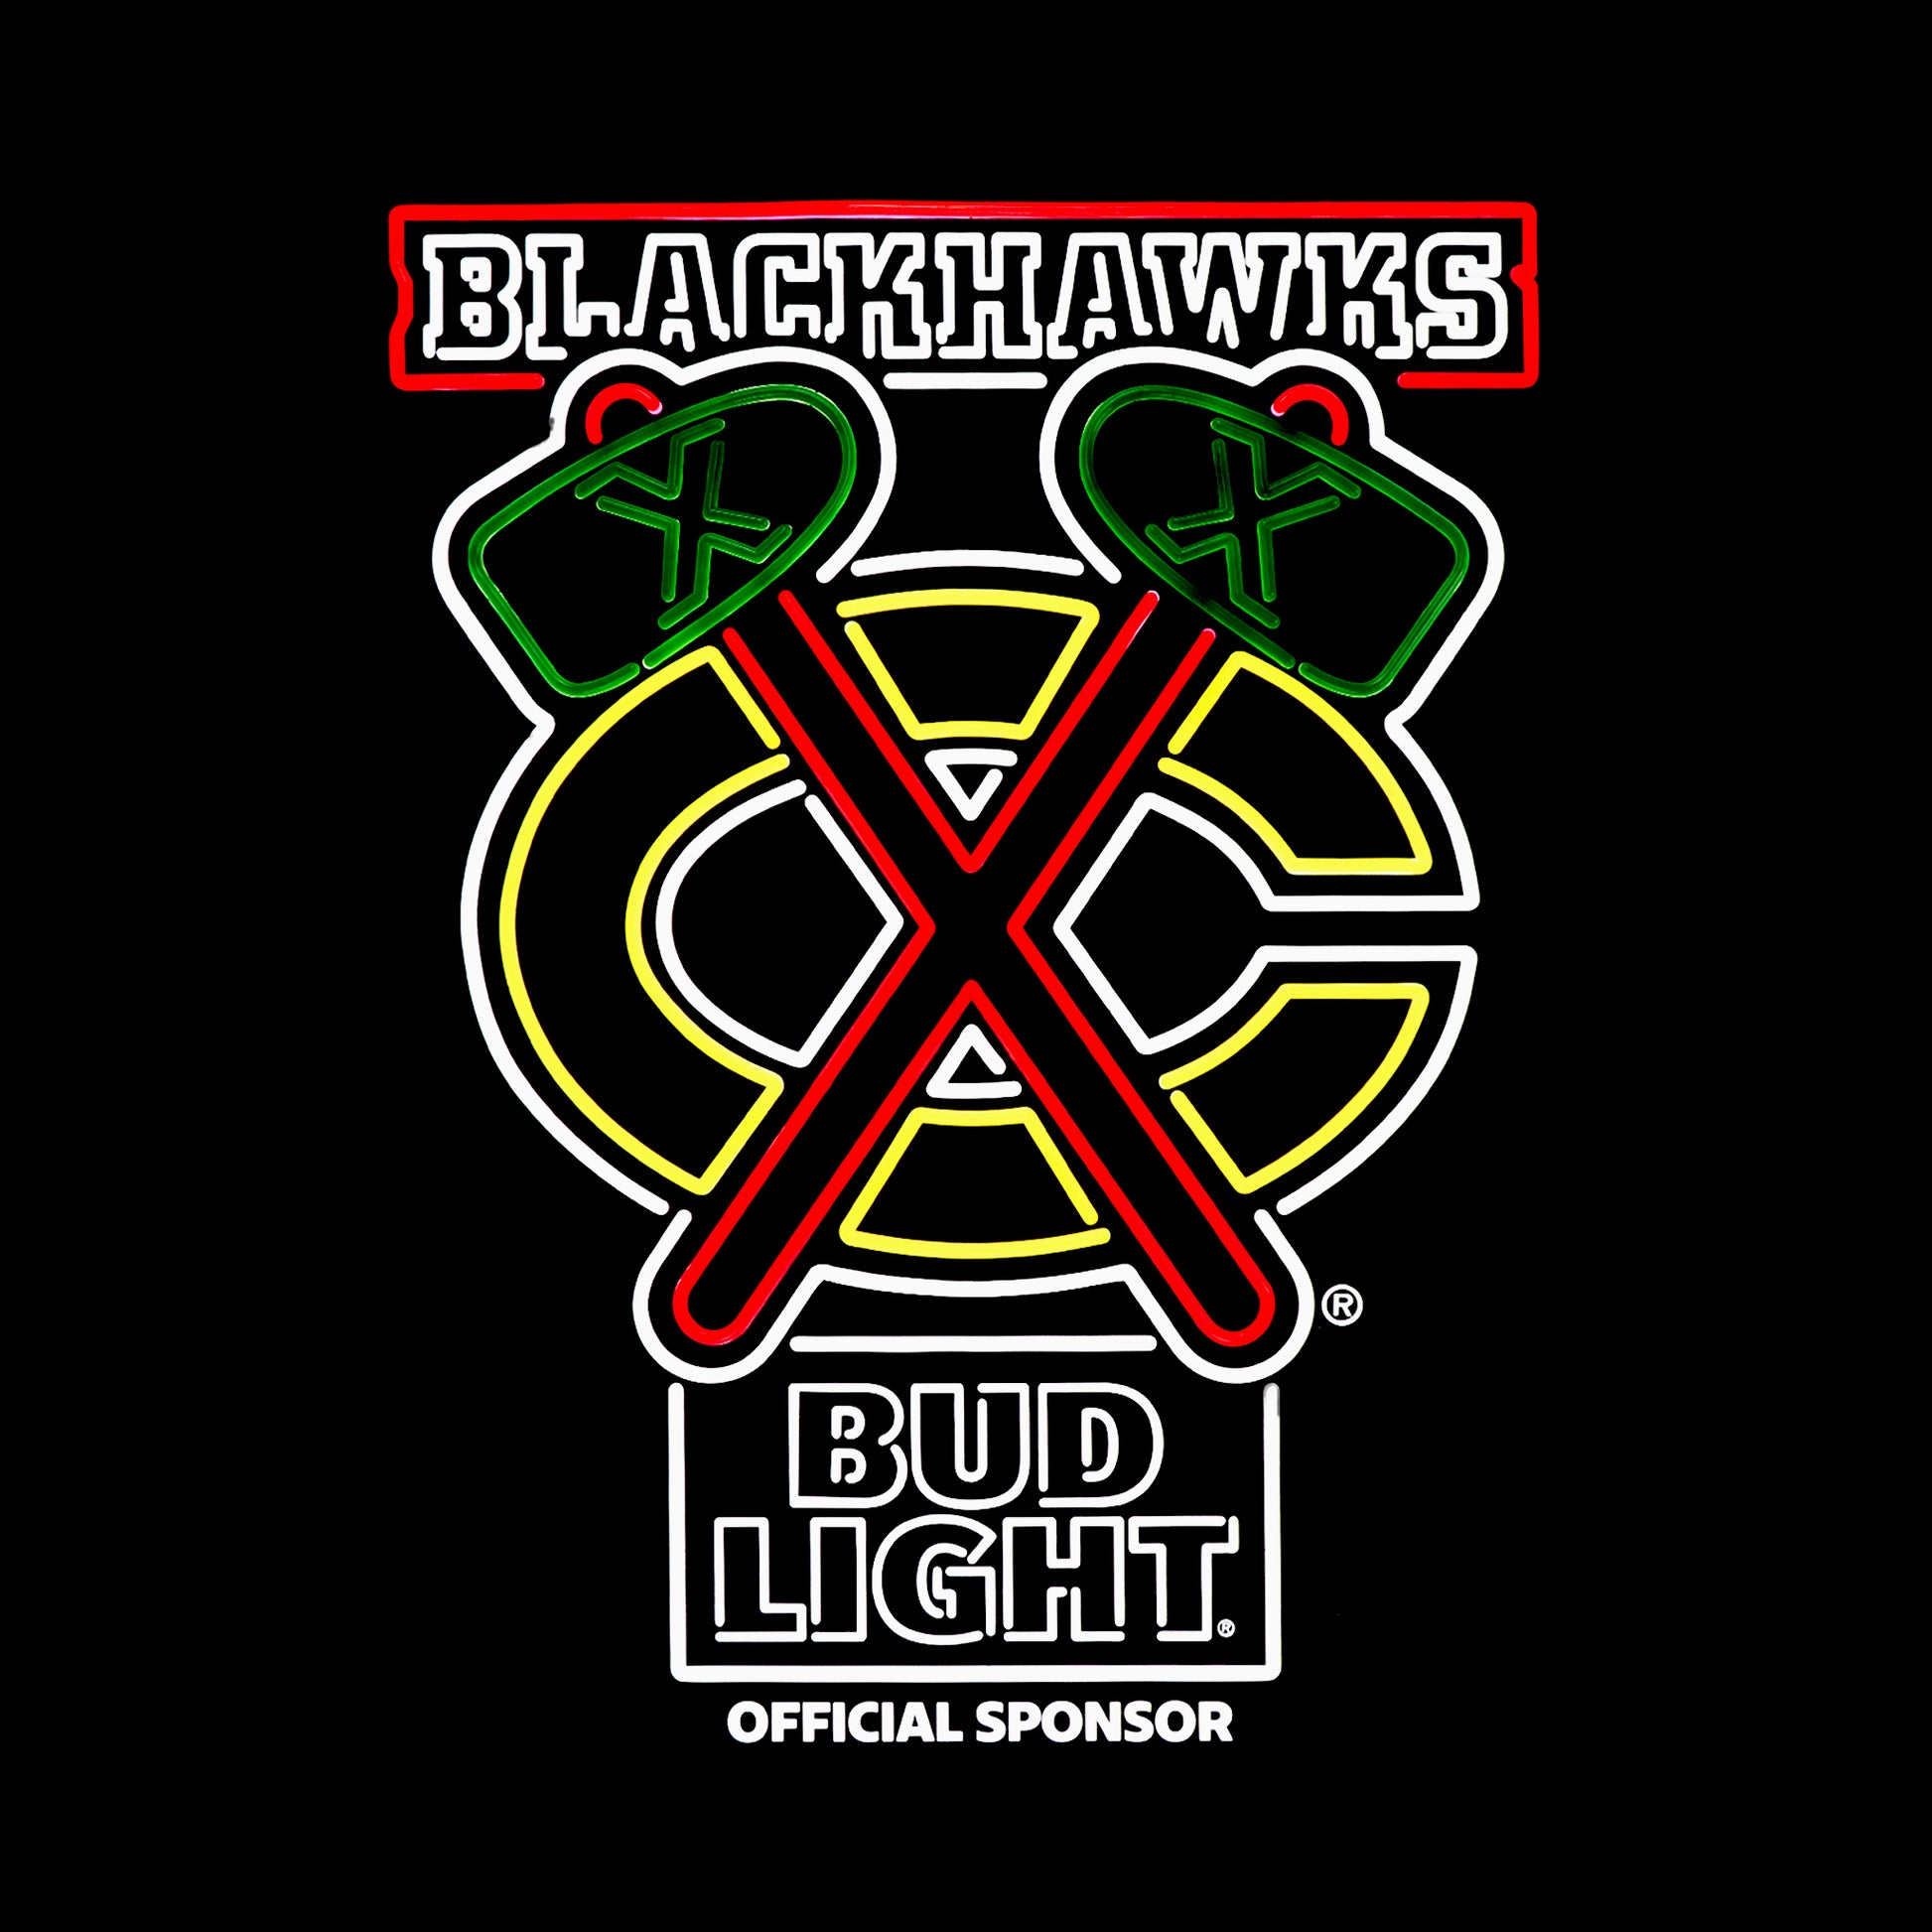 Chicago Blackhawks Bud Light LED with black background